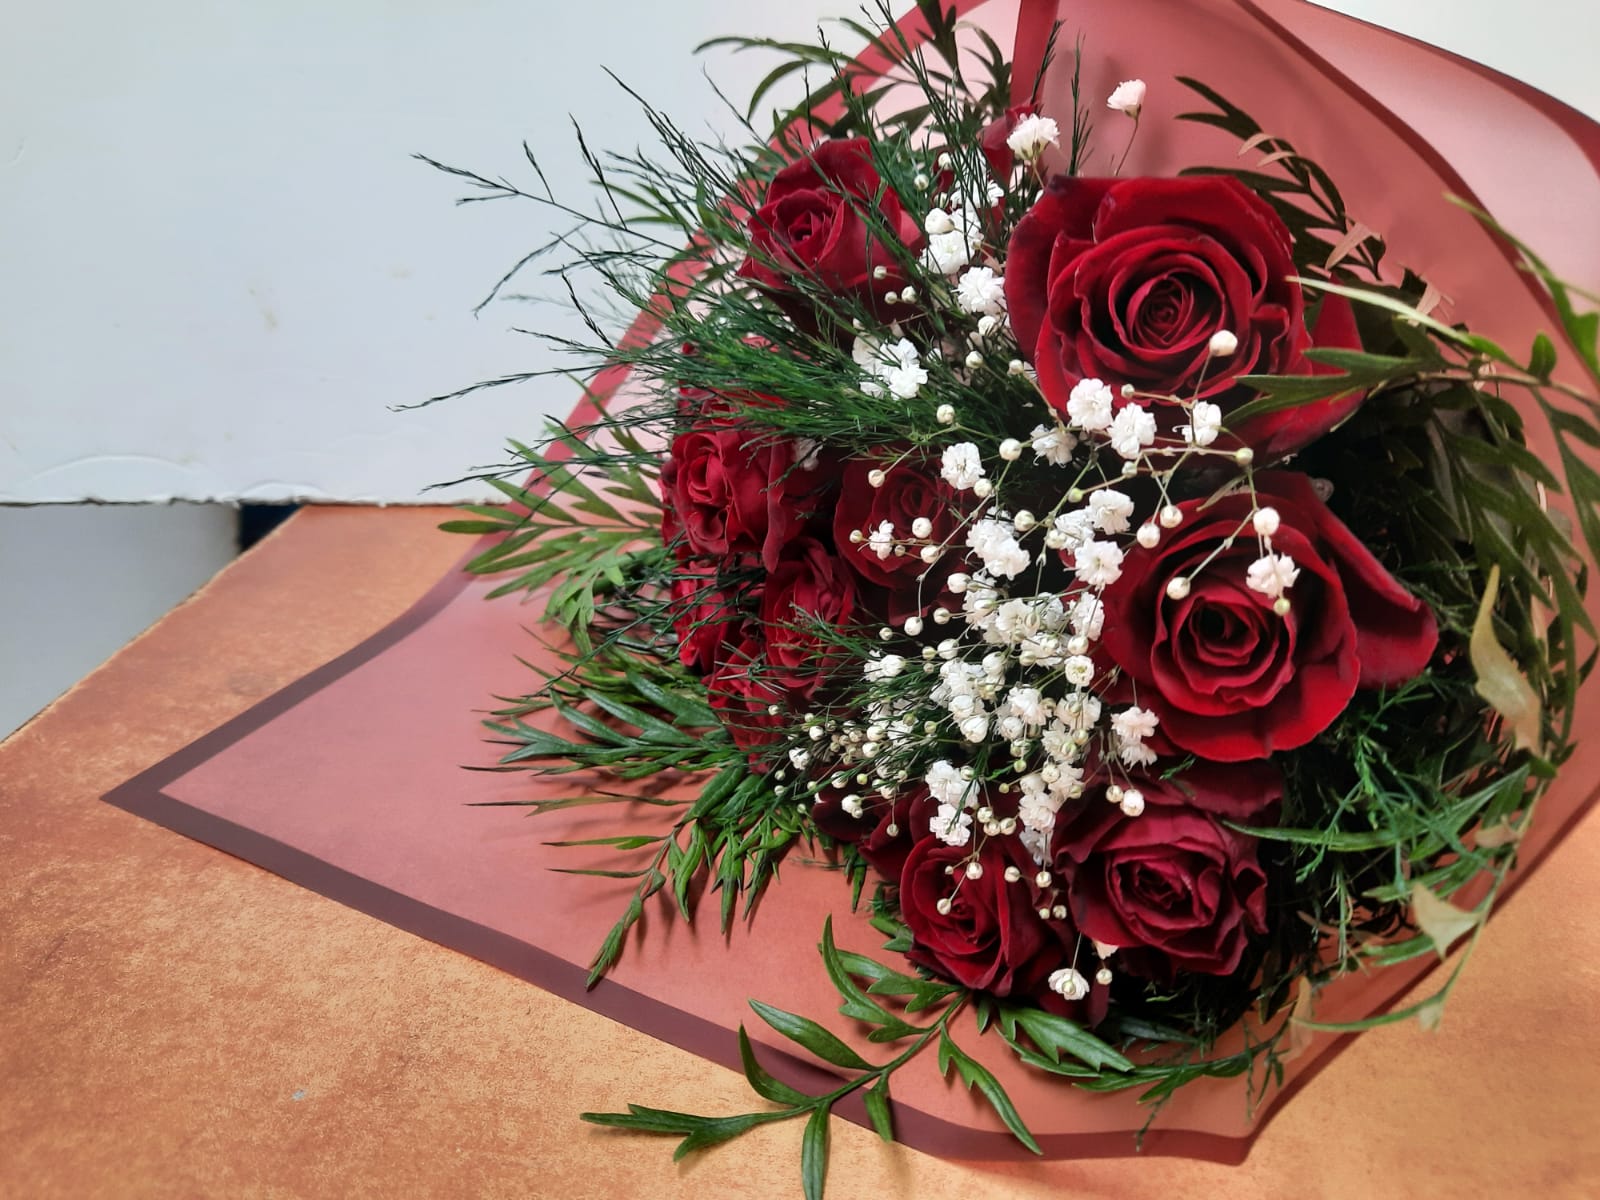 רומנטיקה אדום לבן - פרח בר - עמק חפר - נתניה